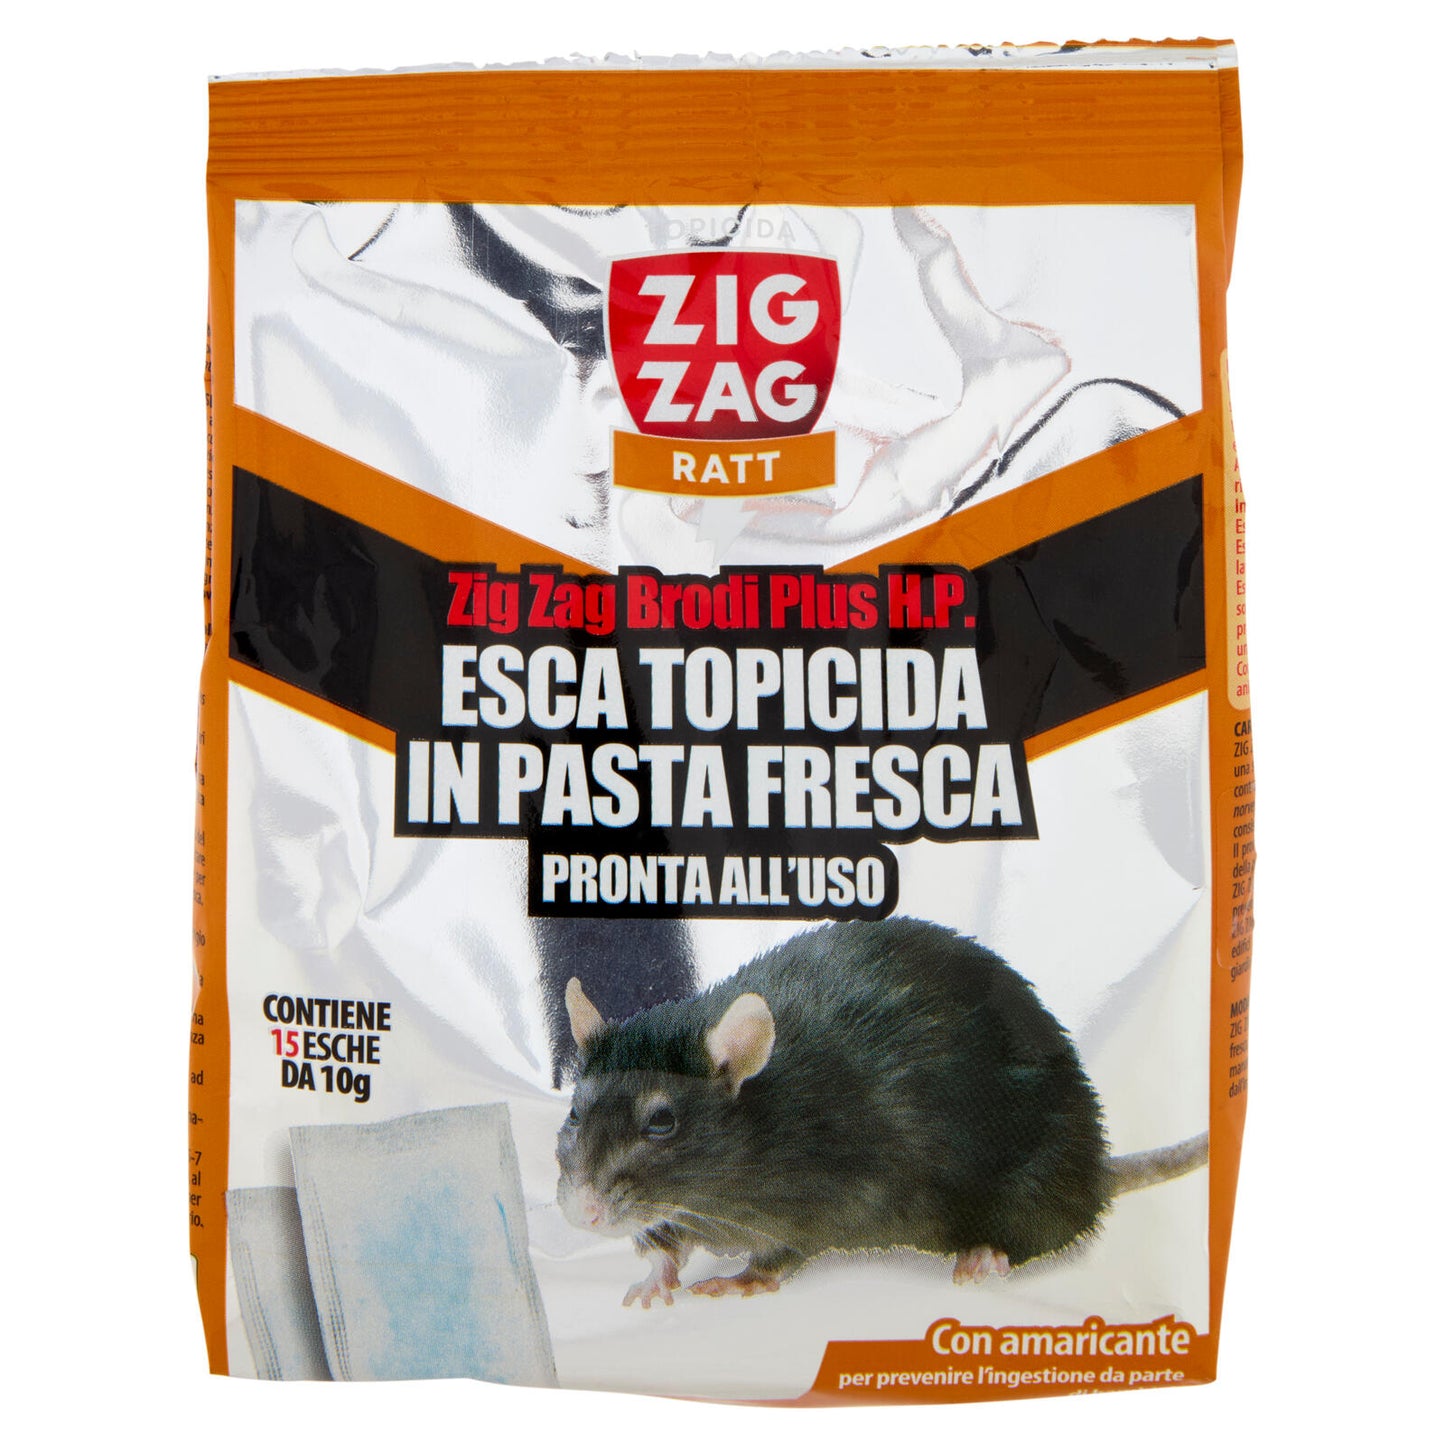 Zig Zag Ratt Brodi Plus H.P. Esca Topicida in Pasta Fresca 150 g